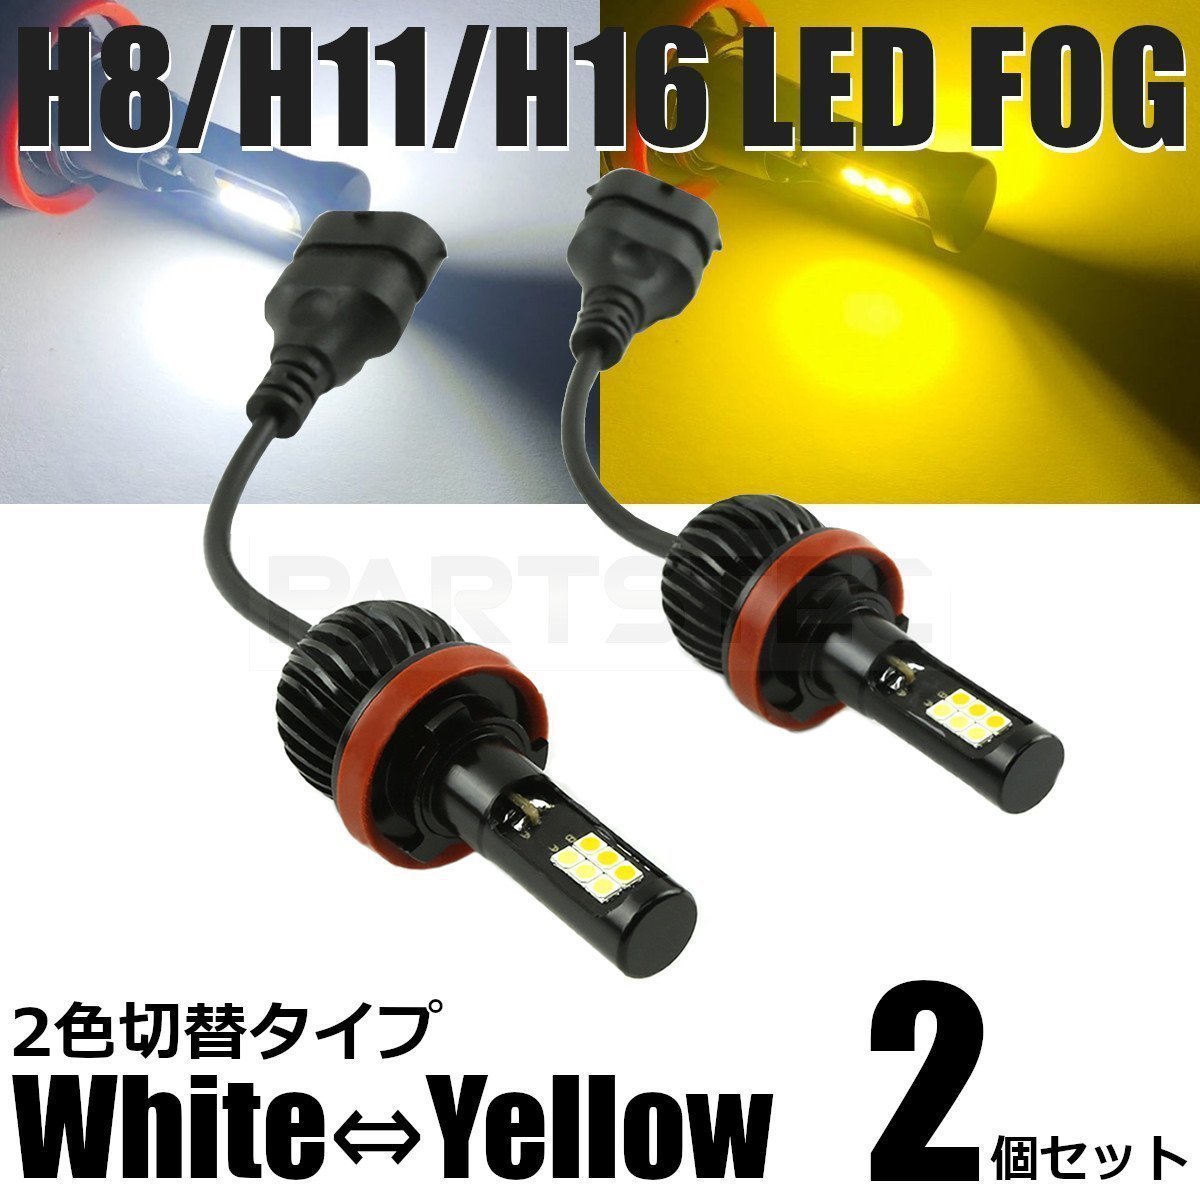 エスティマ 50系 LED フォグ H8/H11/H16 バルブ 2個 2色切替 白/黄色 40W級 5200lm デュアルカラー /134-53 A-1_画像1